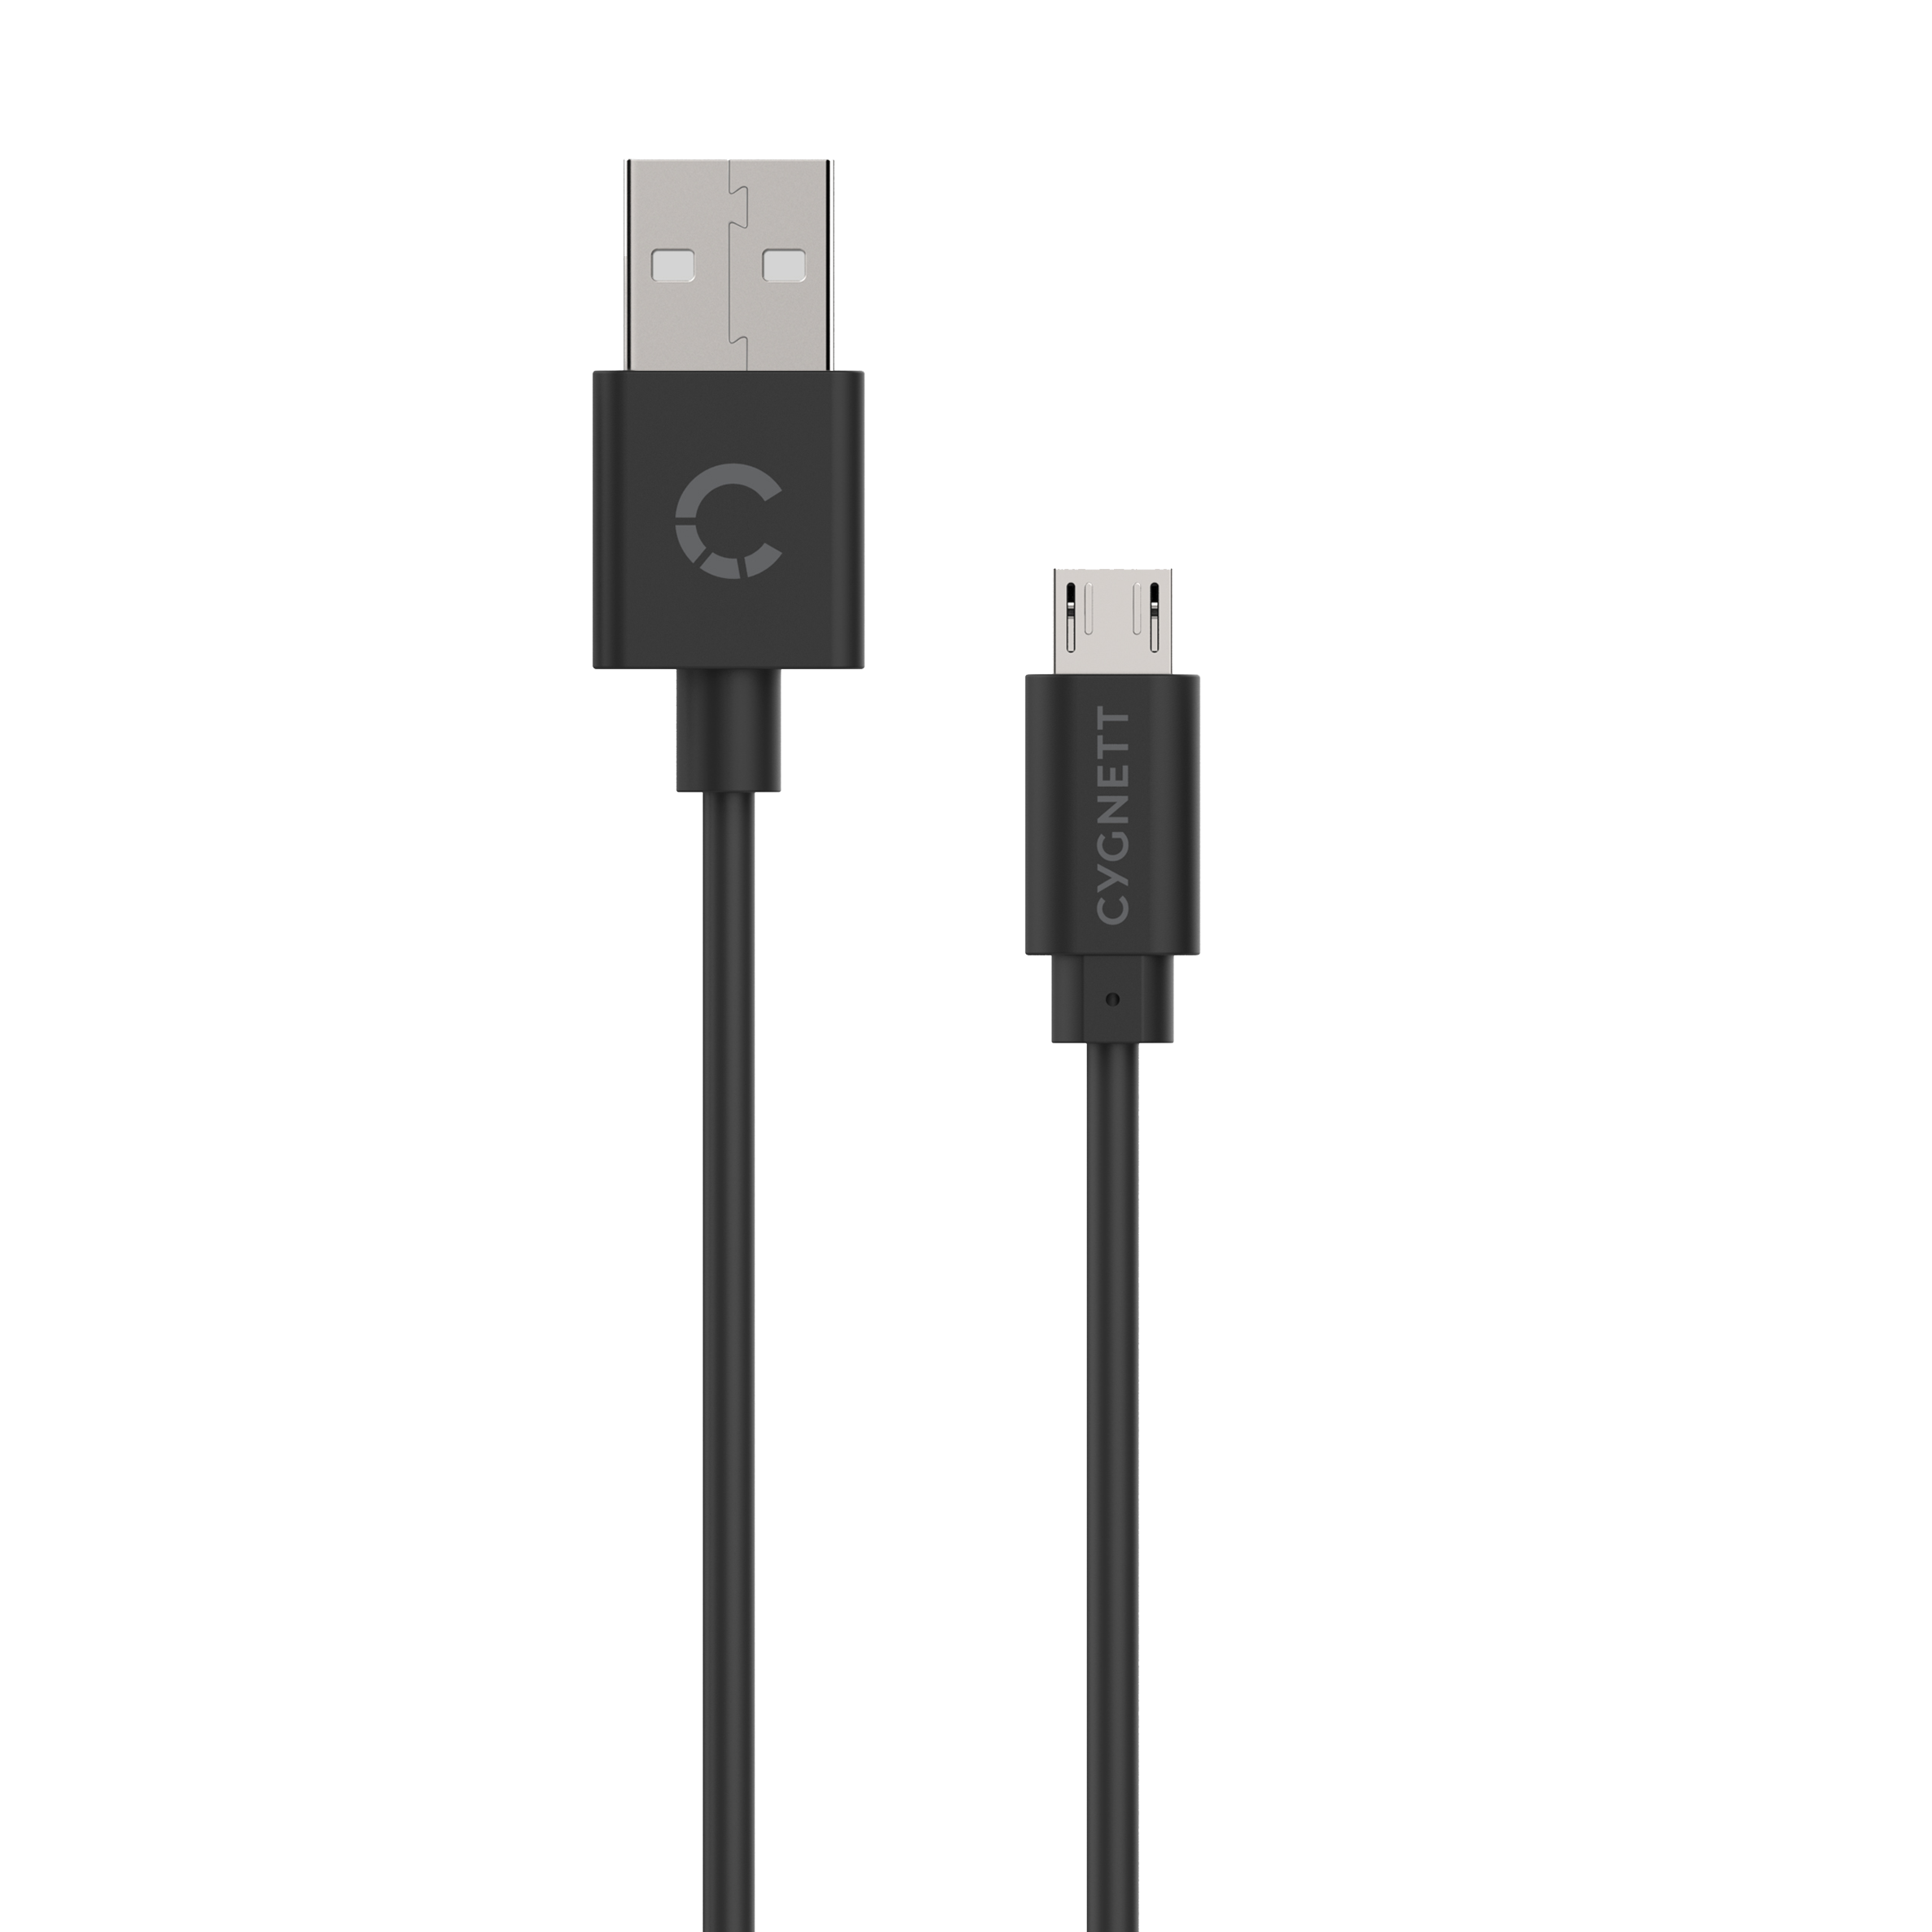 Micro USB to USB-A Cable - Black 1m - Cygnett (AU)